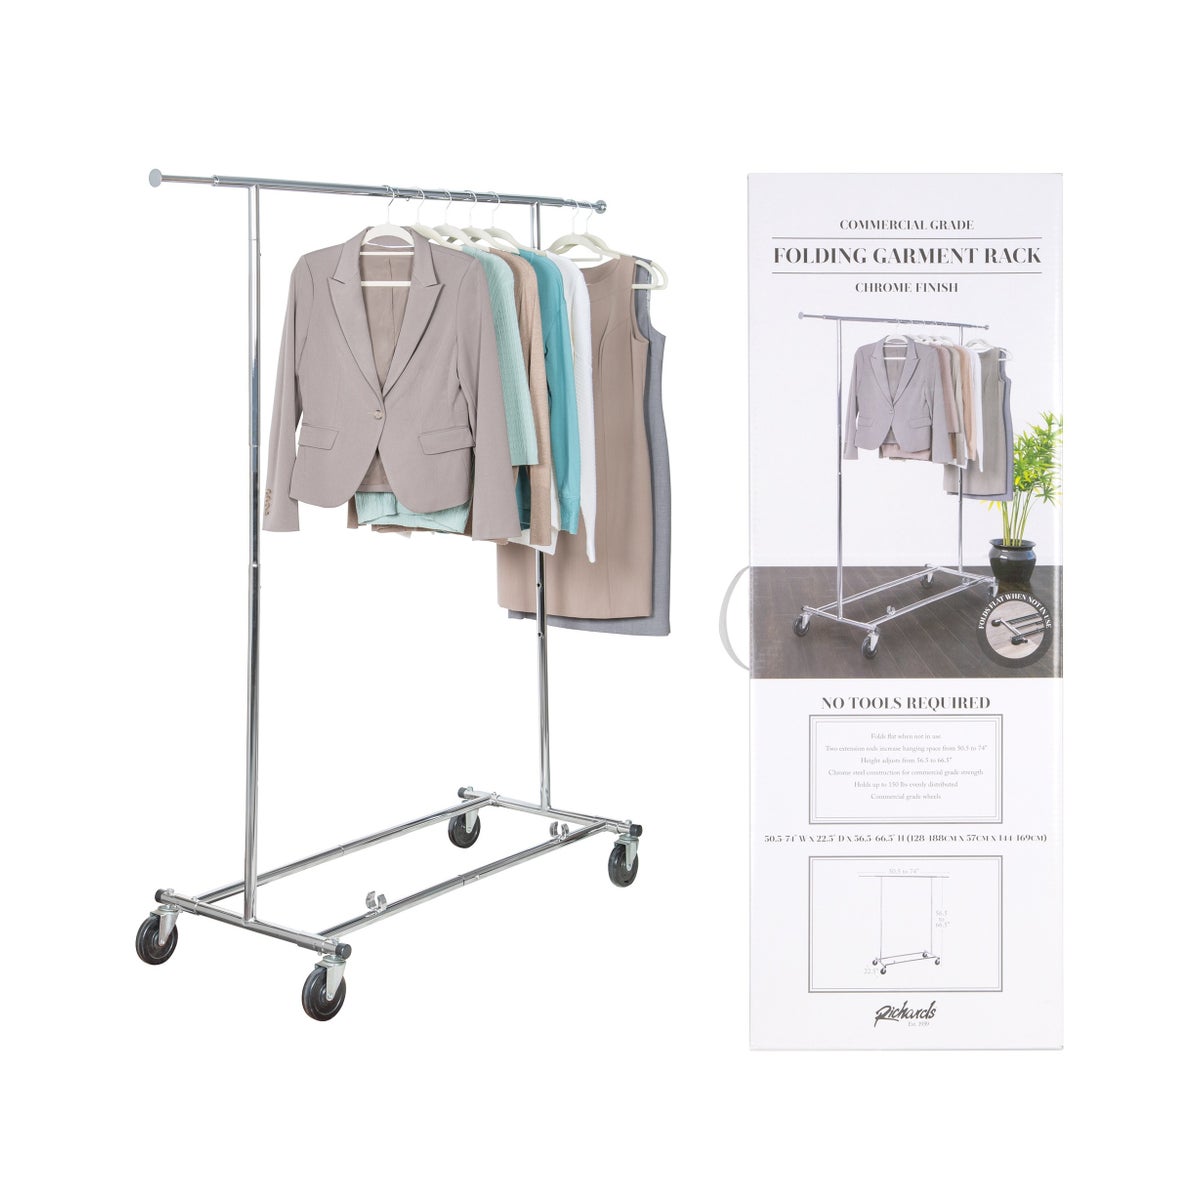 KD Commercial Garment Rack (3)